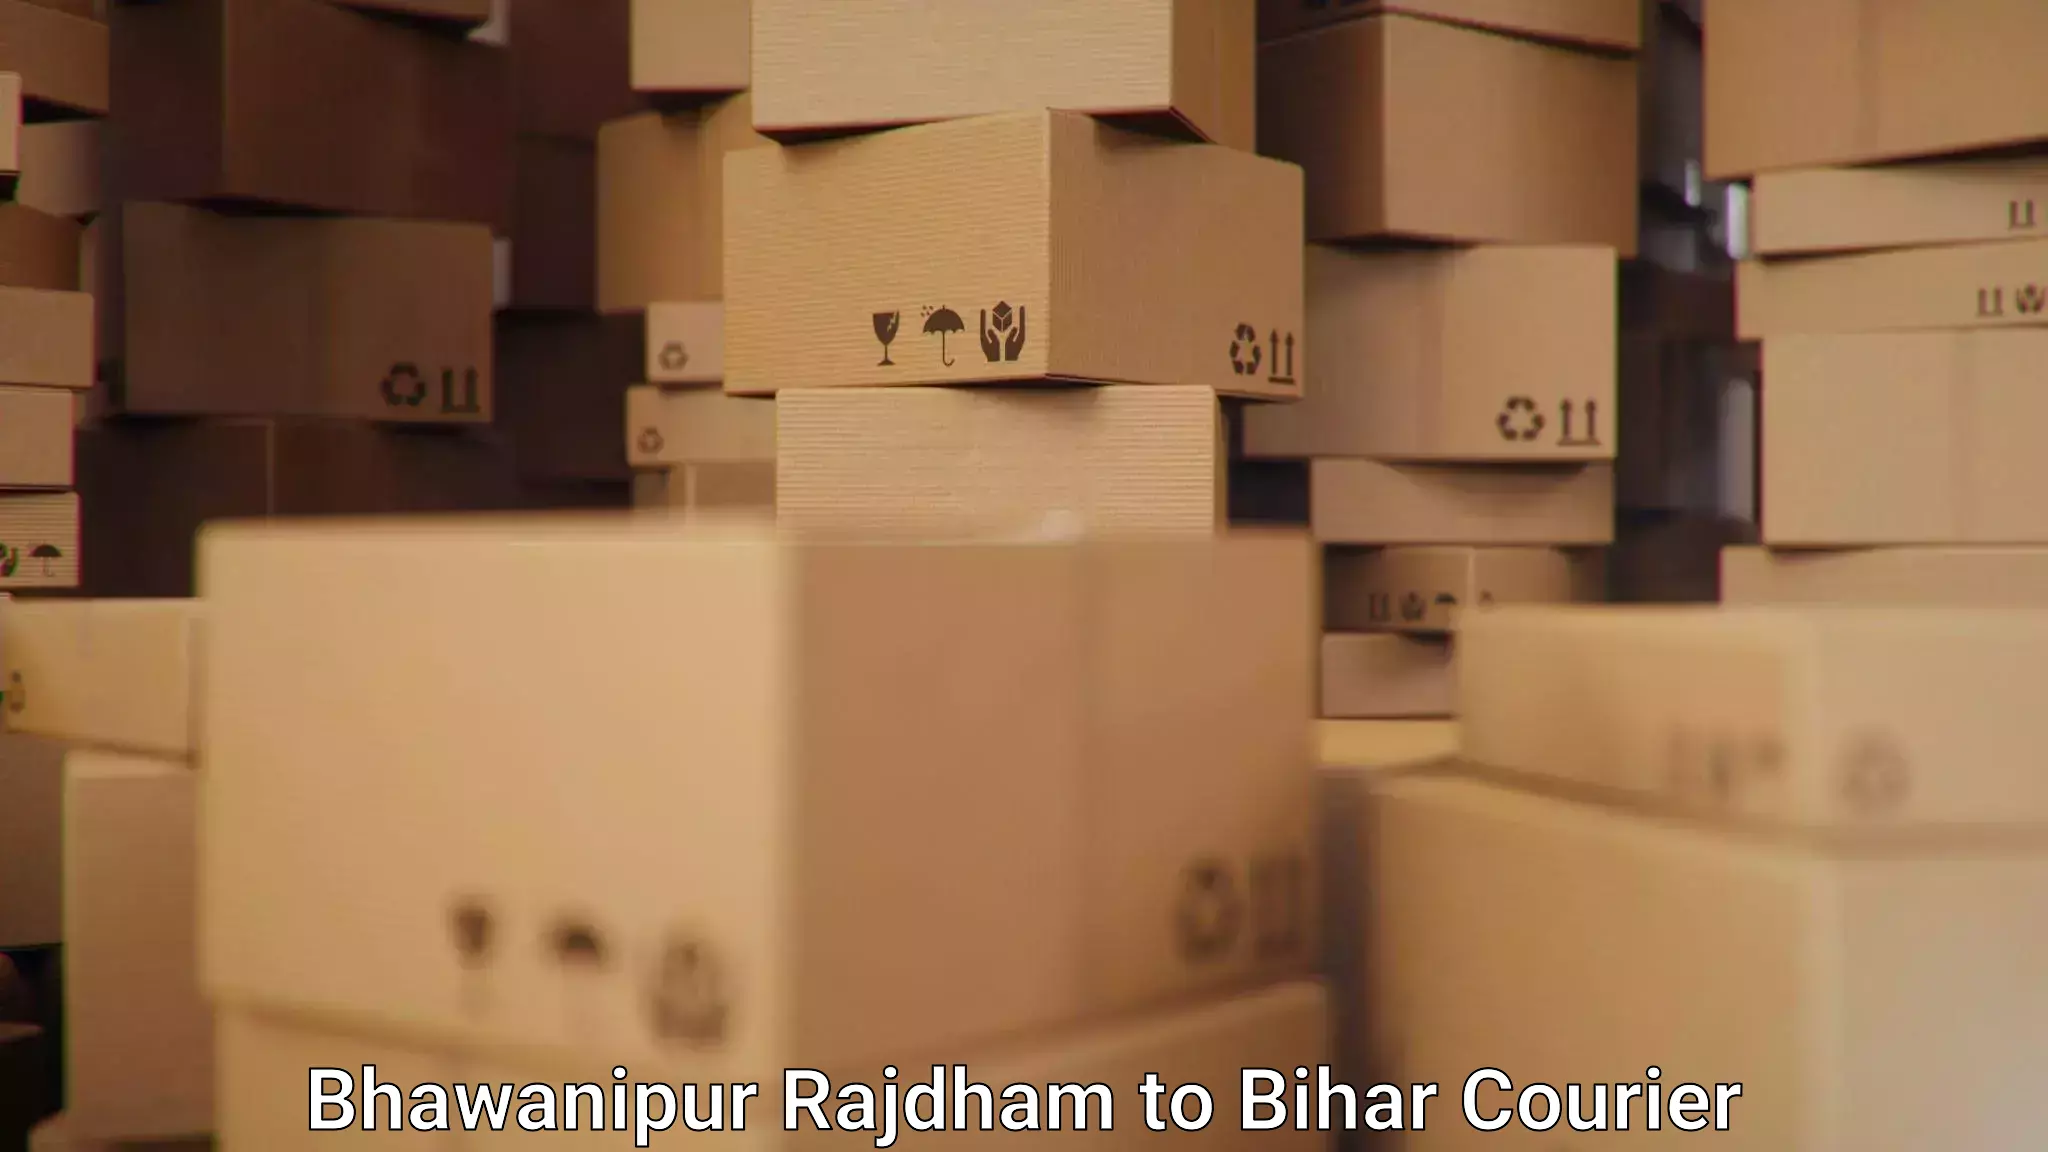 Efficient logistics management in Bhawanipur Rajdham to Minapur